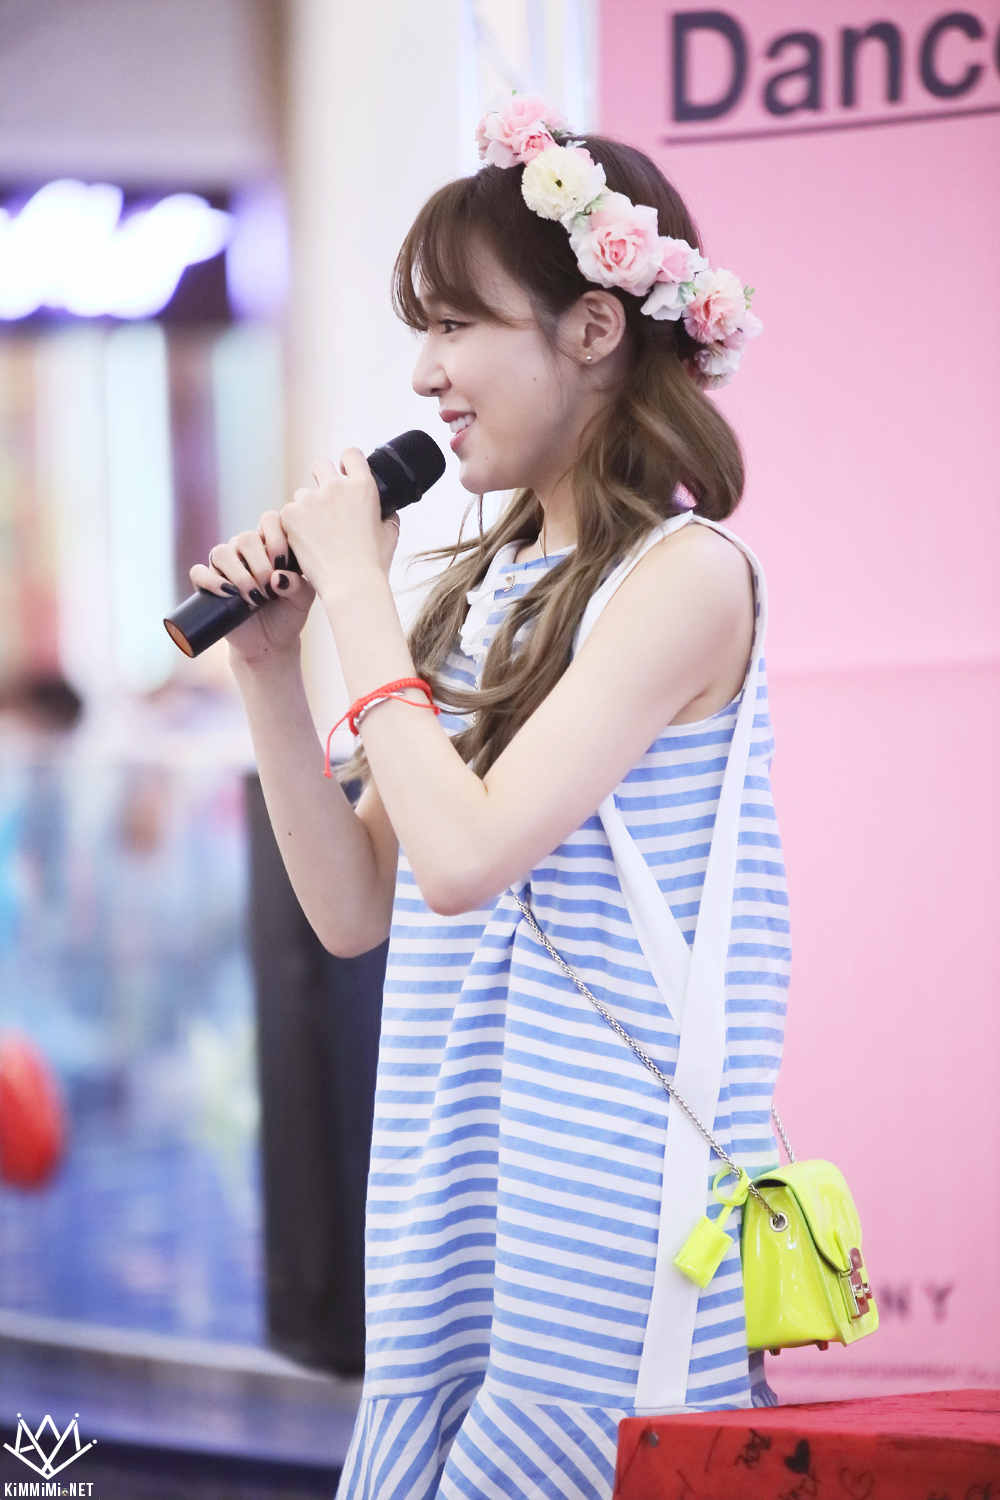 [PIC][06-06-2016]Tiffany tham dự buổi Fansign cho "I Just Wanna Dance" tại Busan vào chiều nay - Page 5 262ECF39575818CA2DC21F